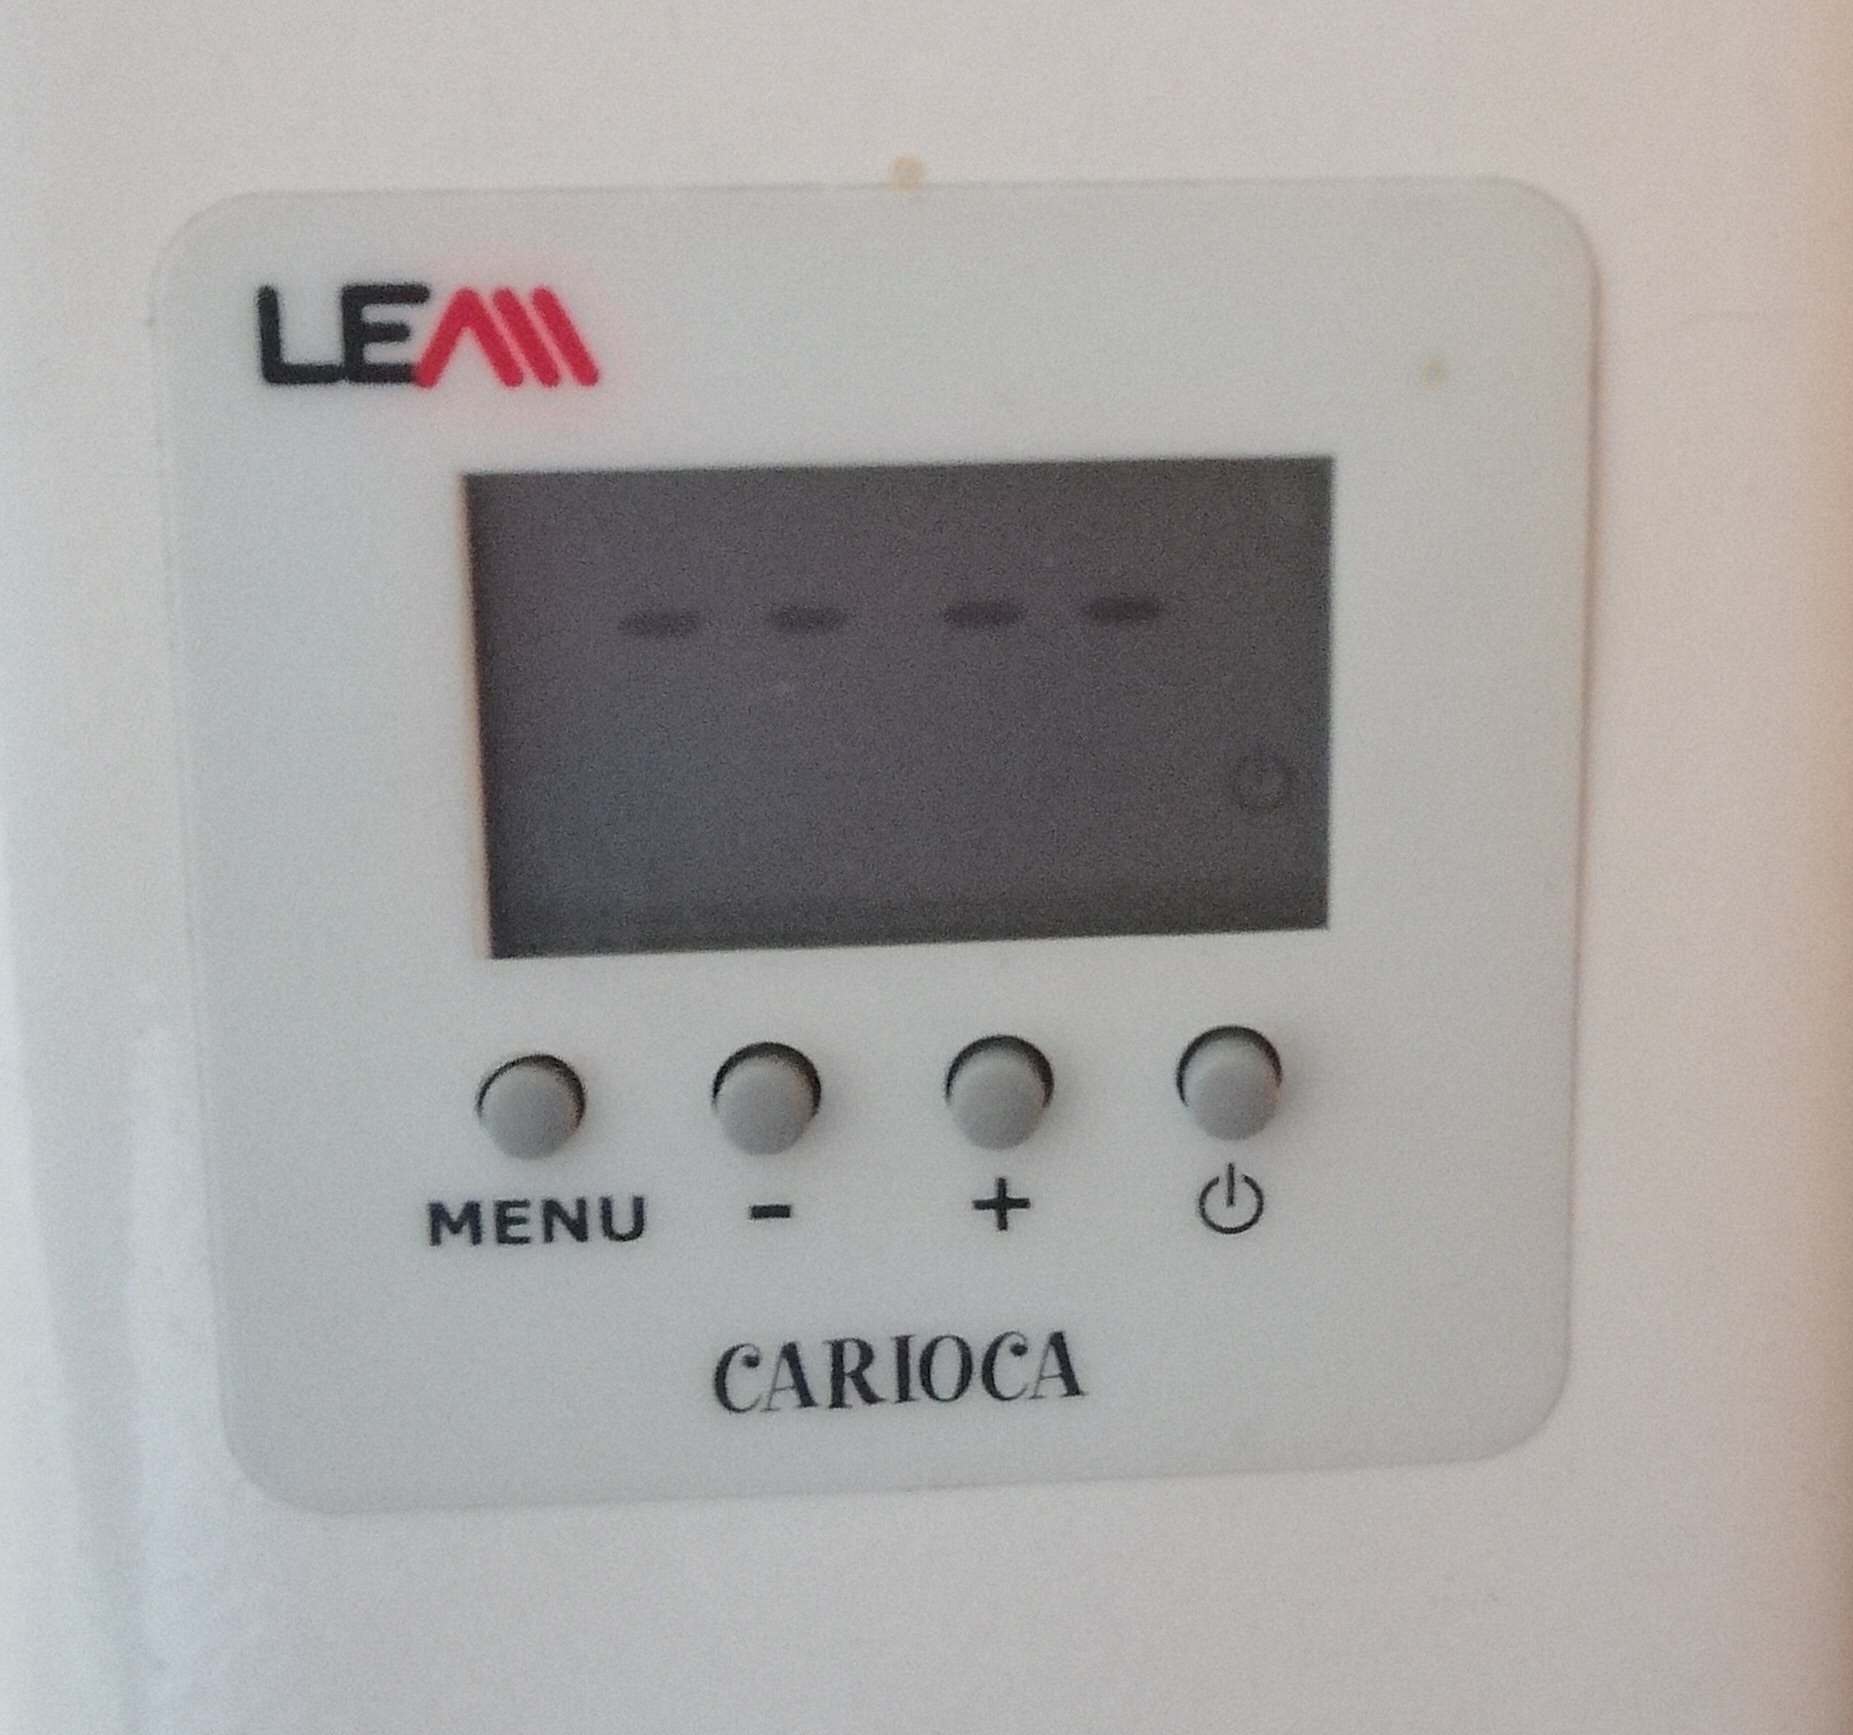 Afficheur d'un radiateur Lem carioca